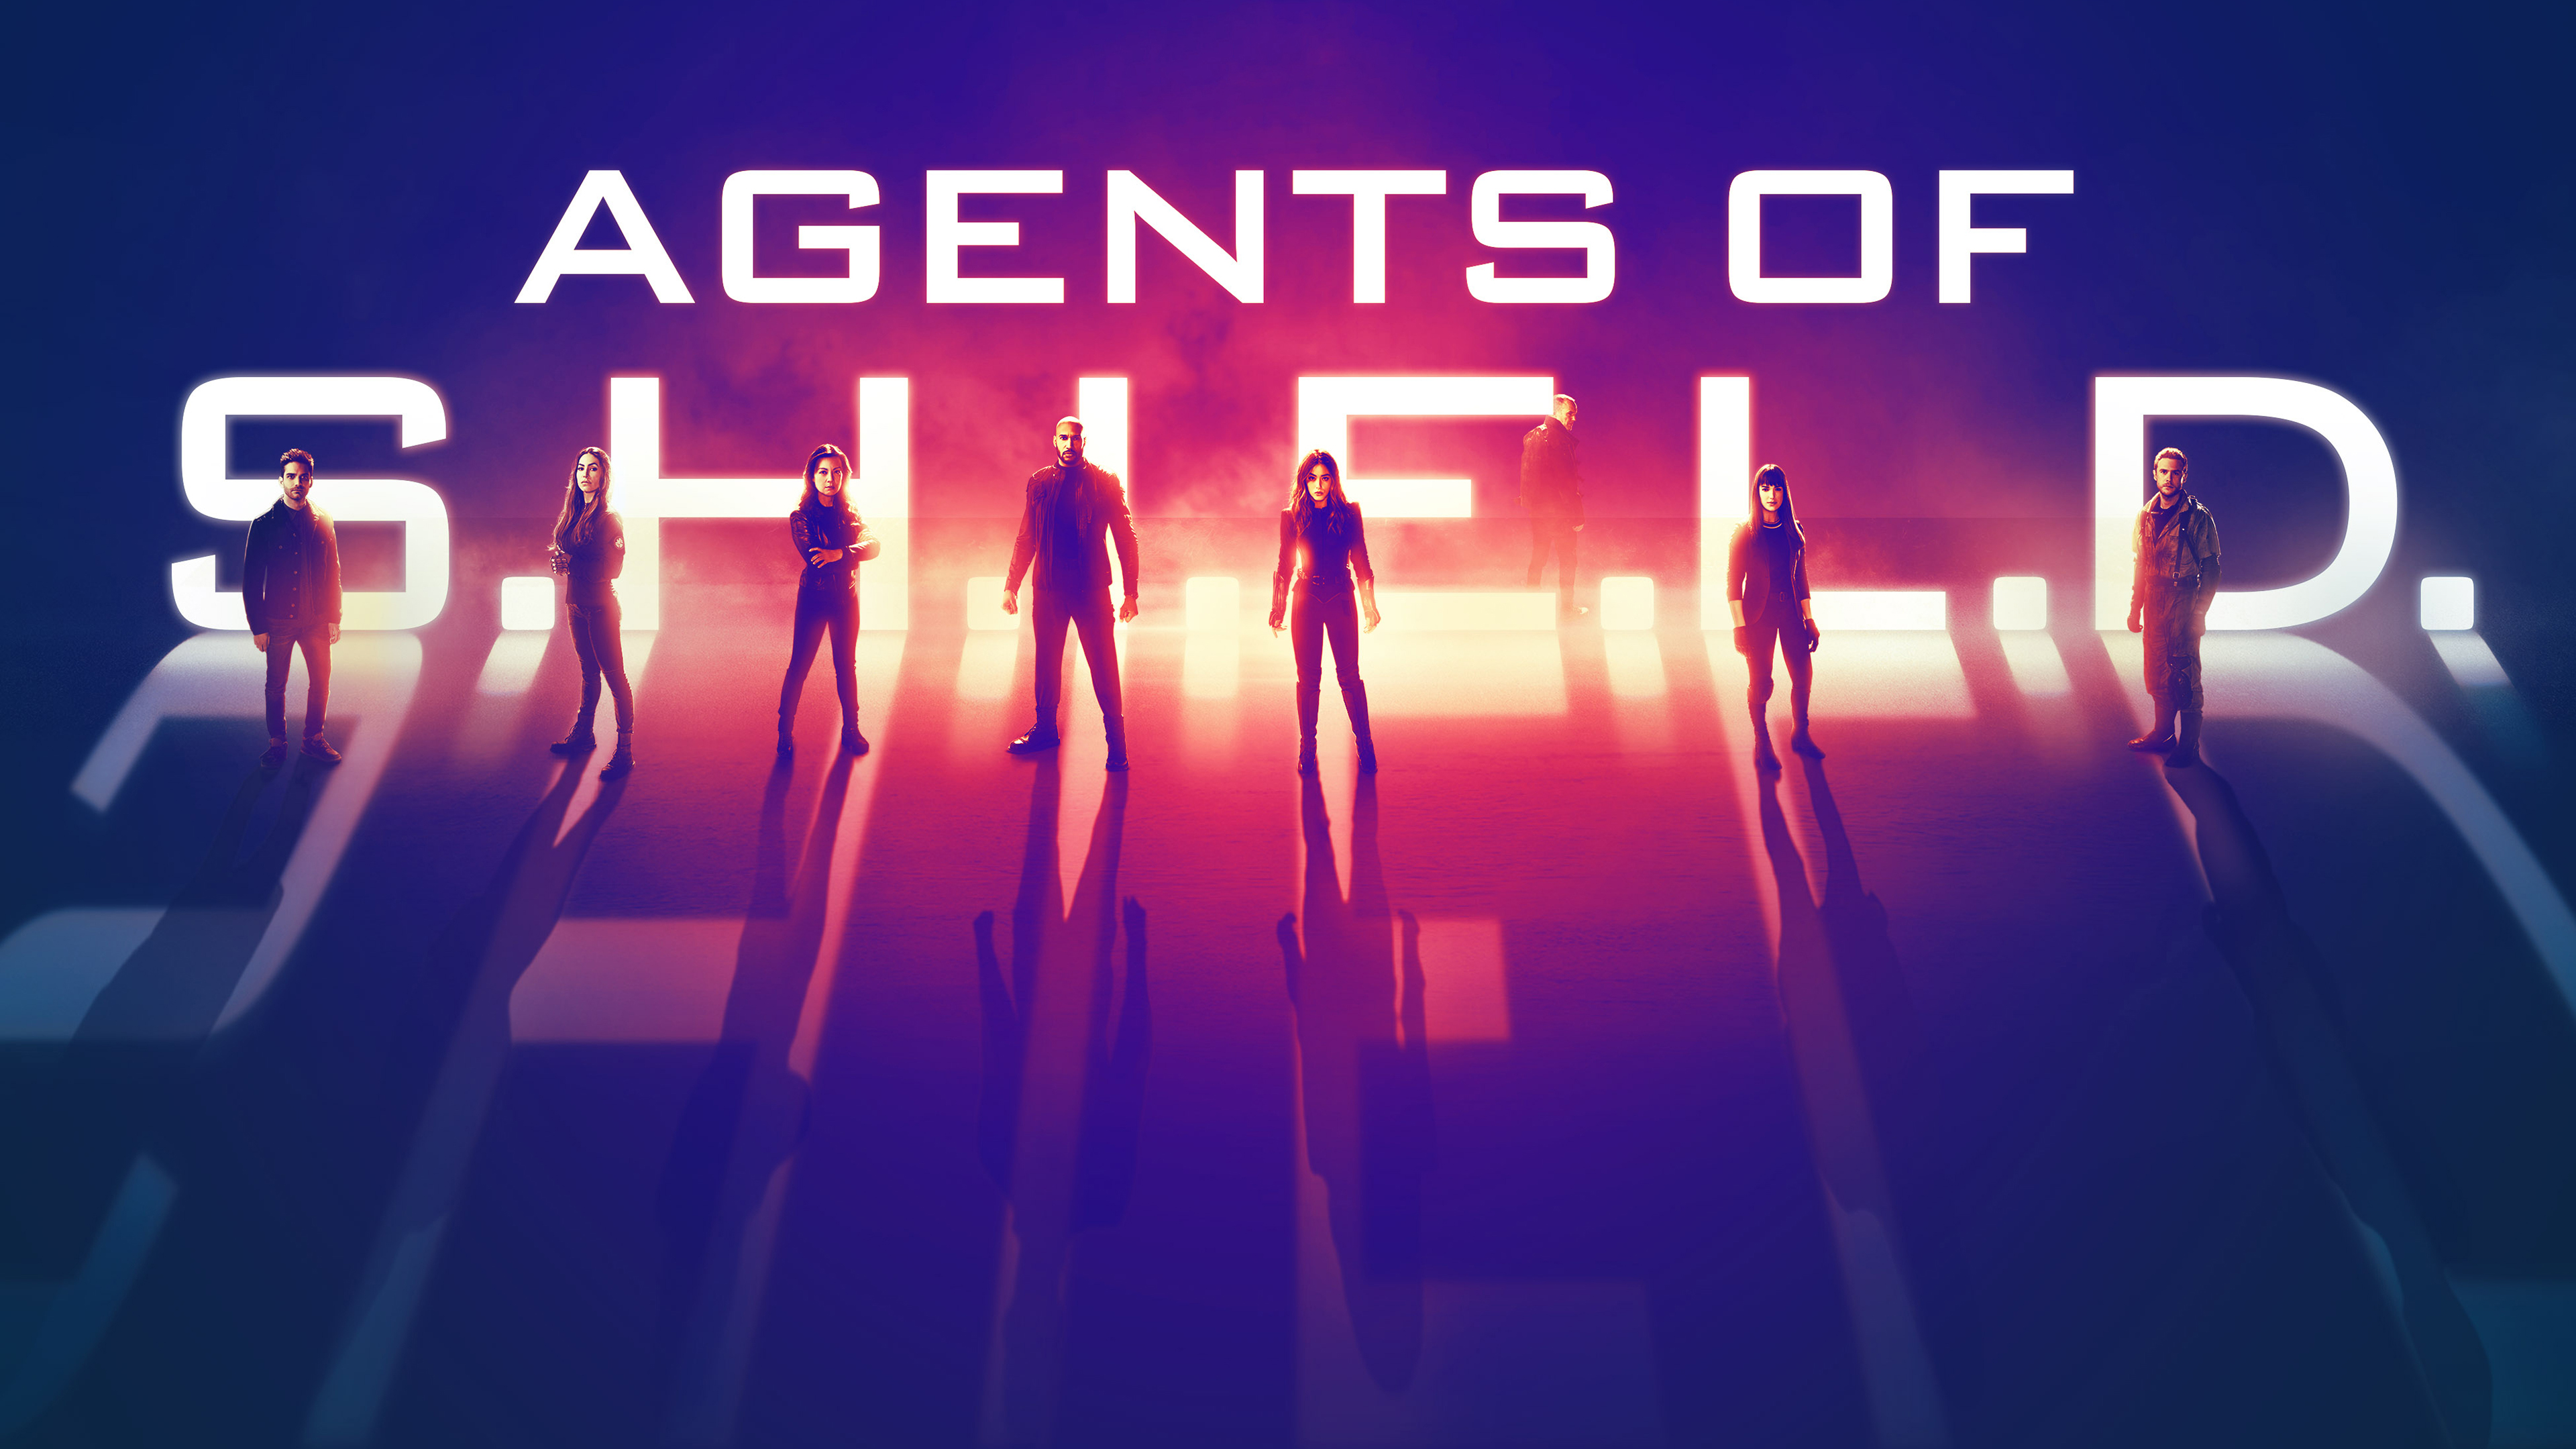 Chloe Bennet Agents Of Shield Season 6 Wallpapers